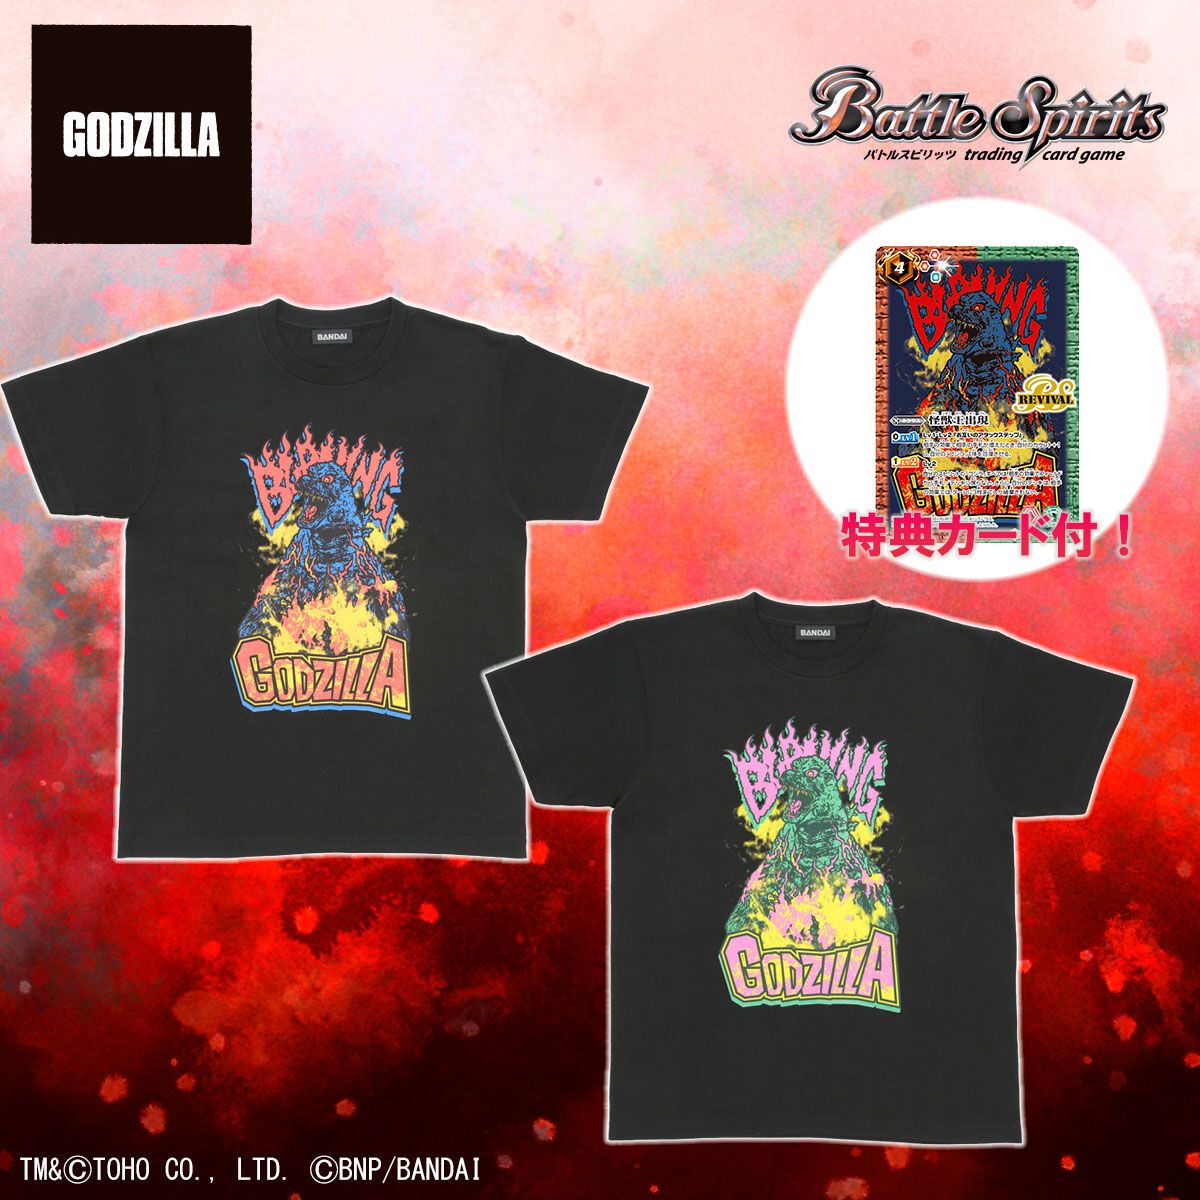 【お知らせ】
バンダイより

ゴジラ×バトルスピリッツコラボを記念して
Tシャツとカードがセットになって登場！

イラストはSTUDIO696デザイン
バトルスピリッツのカード化は初！

S～XXLまで５サイズ展開

p-bandai.jp/item/item-1000…

☆アイテム一覧
p-bandai.jp/fashion/c0006/…

#ゴジラ #Godzilla